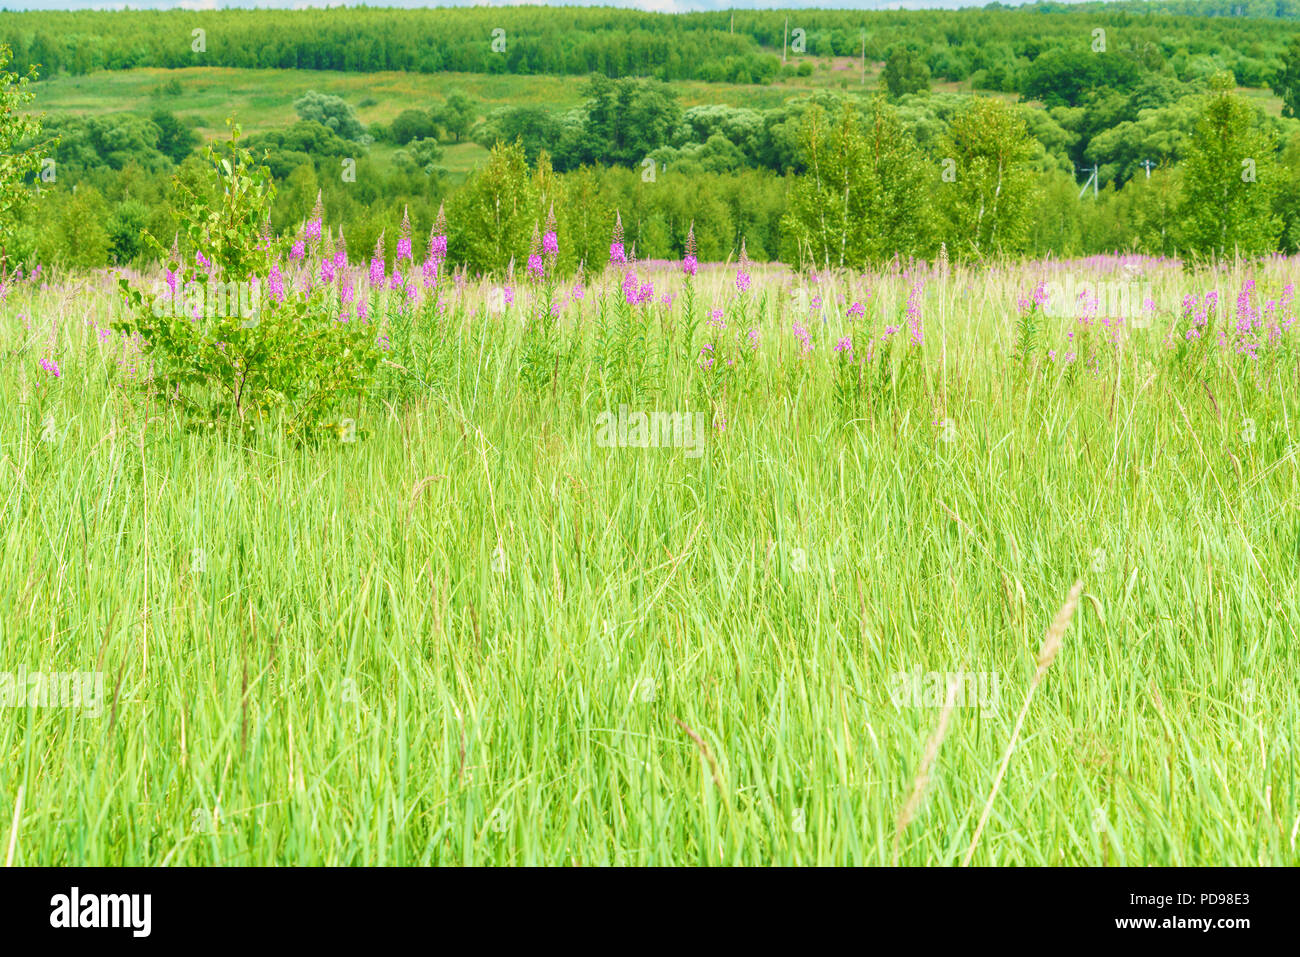 Estate giugno bel paesaggio con la fioritura fireweed e prato con betulle, Regione di Mosca, Russia Foto Stock